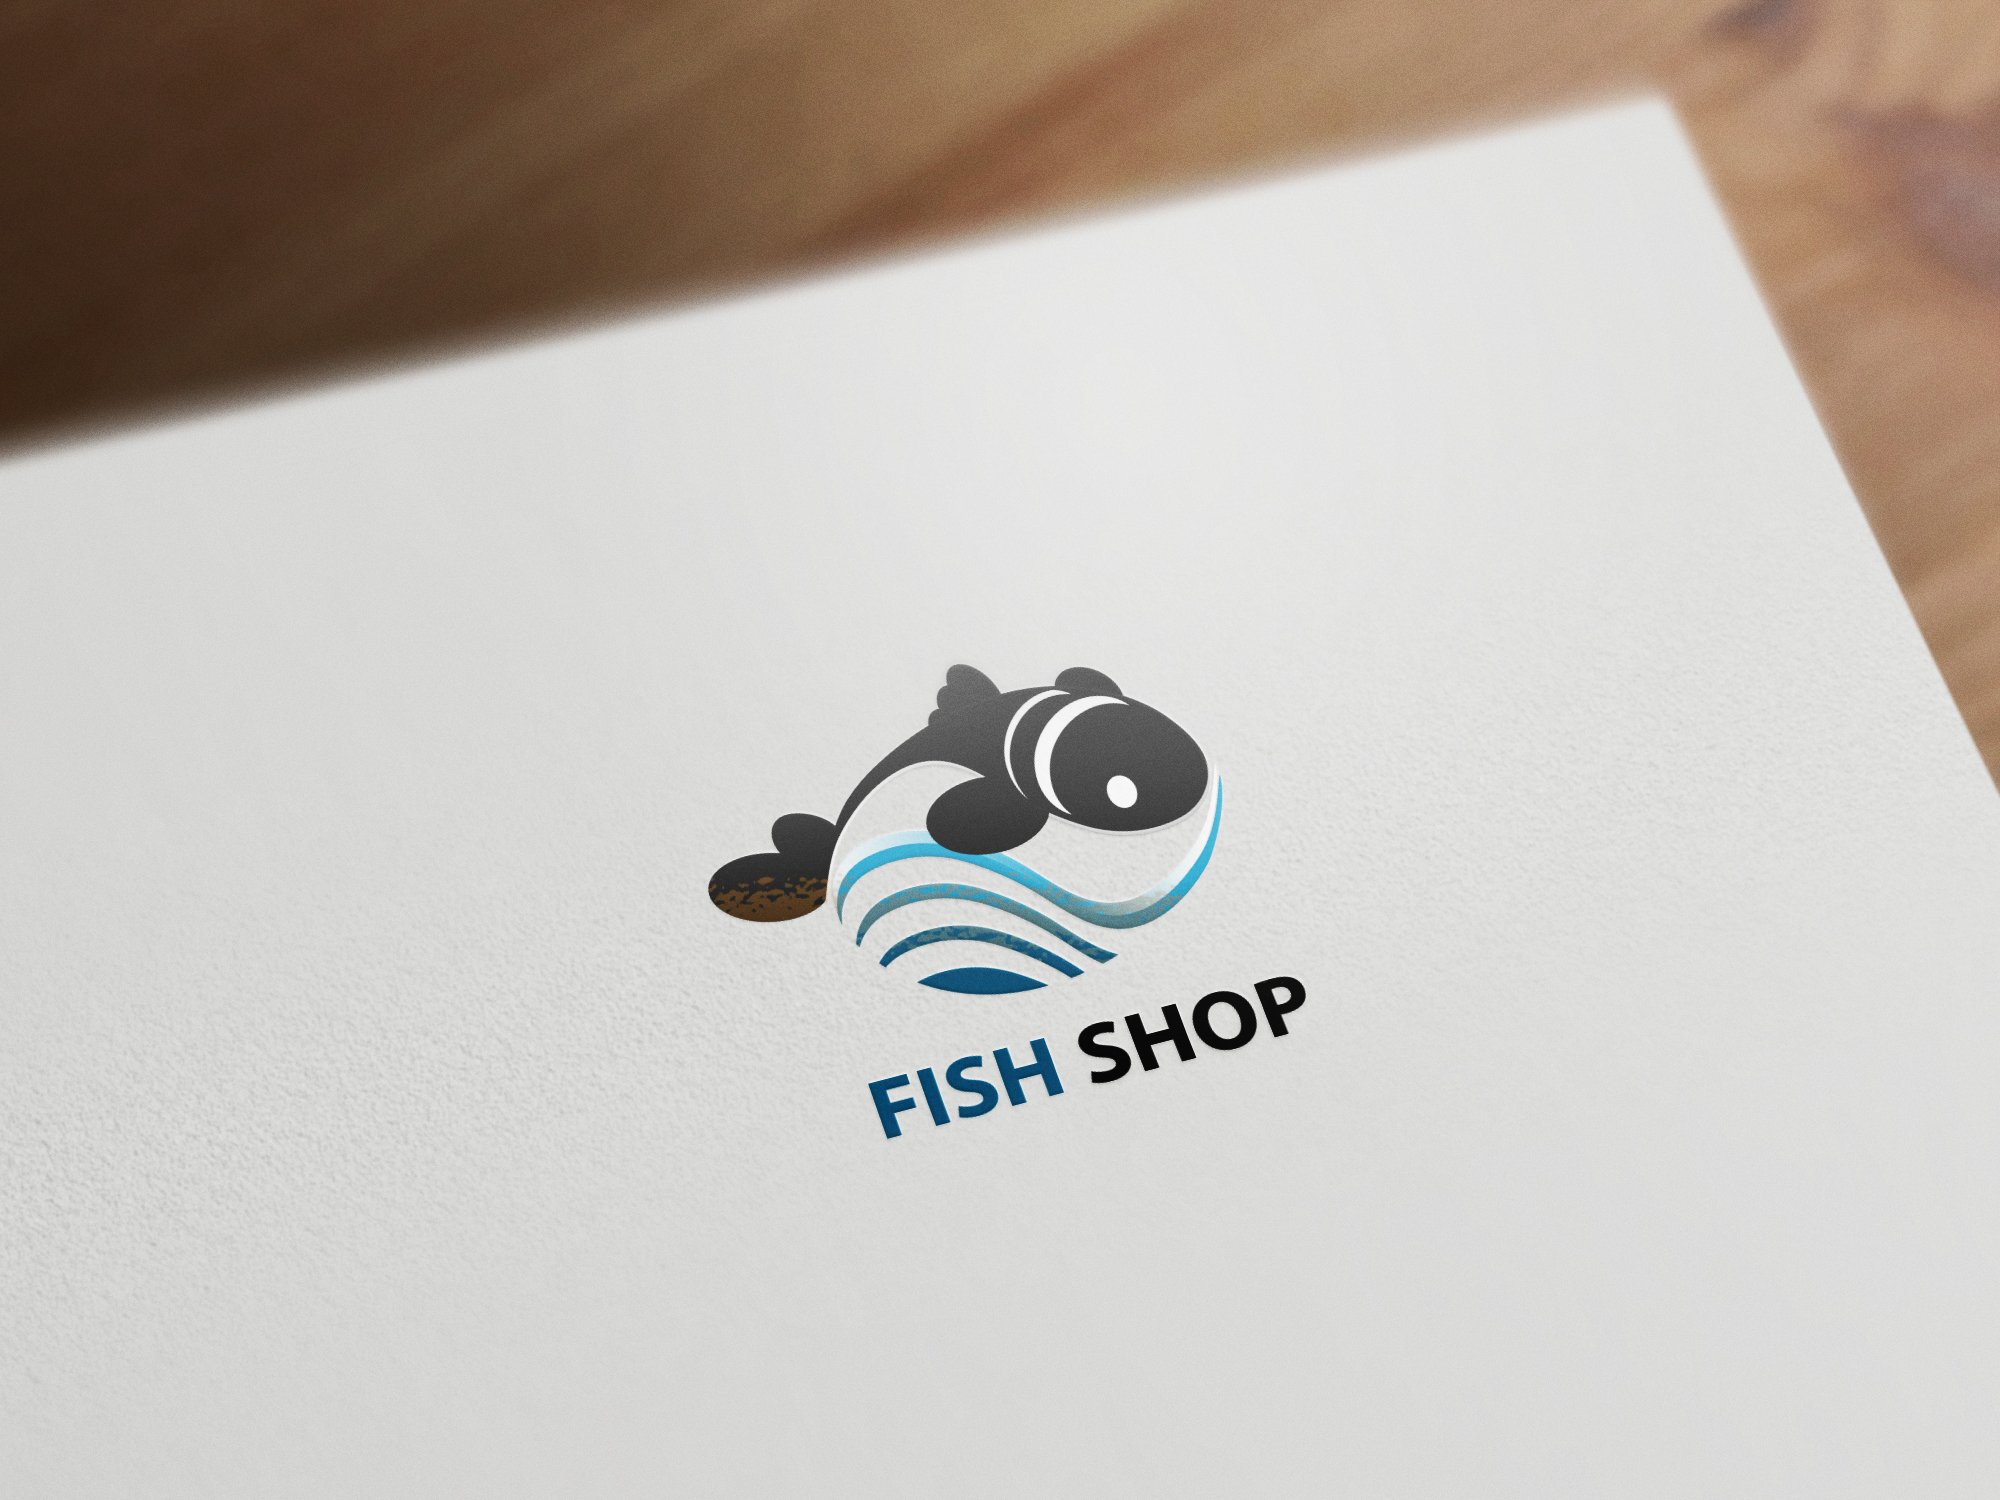 Green fish for stylish logo.